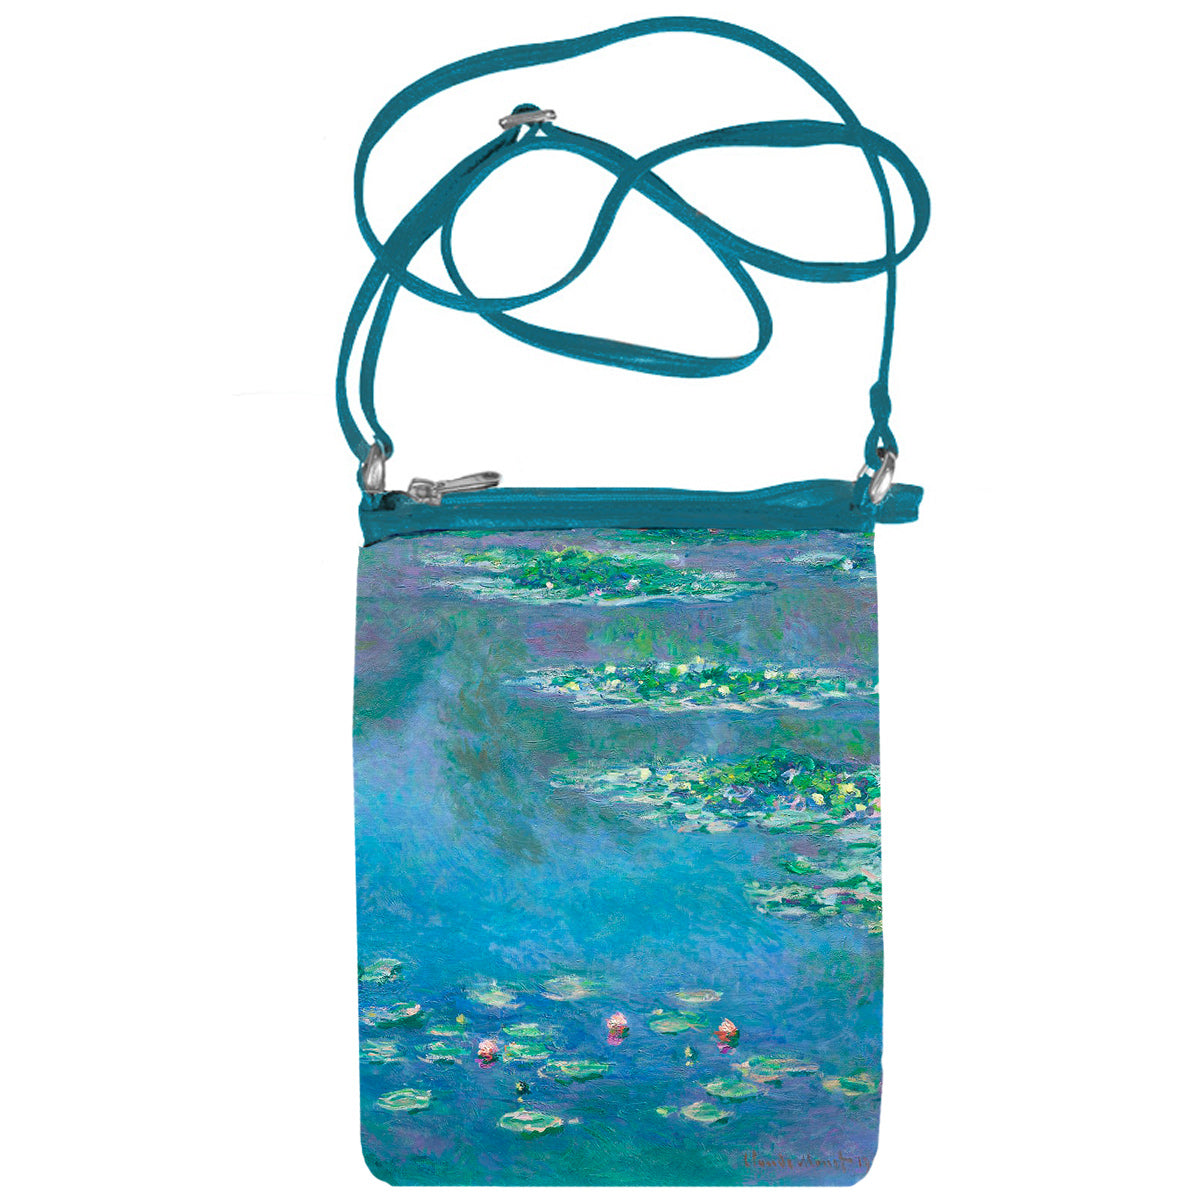 Claude Monet’s “Bain à La Grenouillère”, “Monet Themed handbag”.